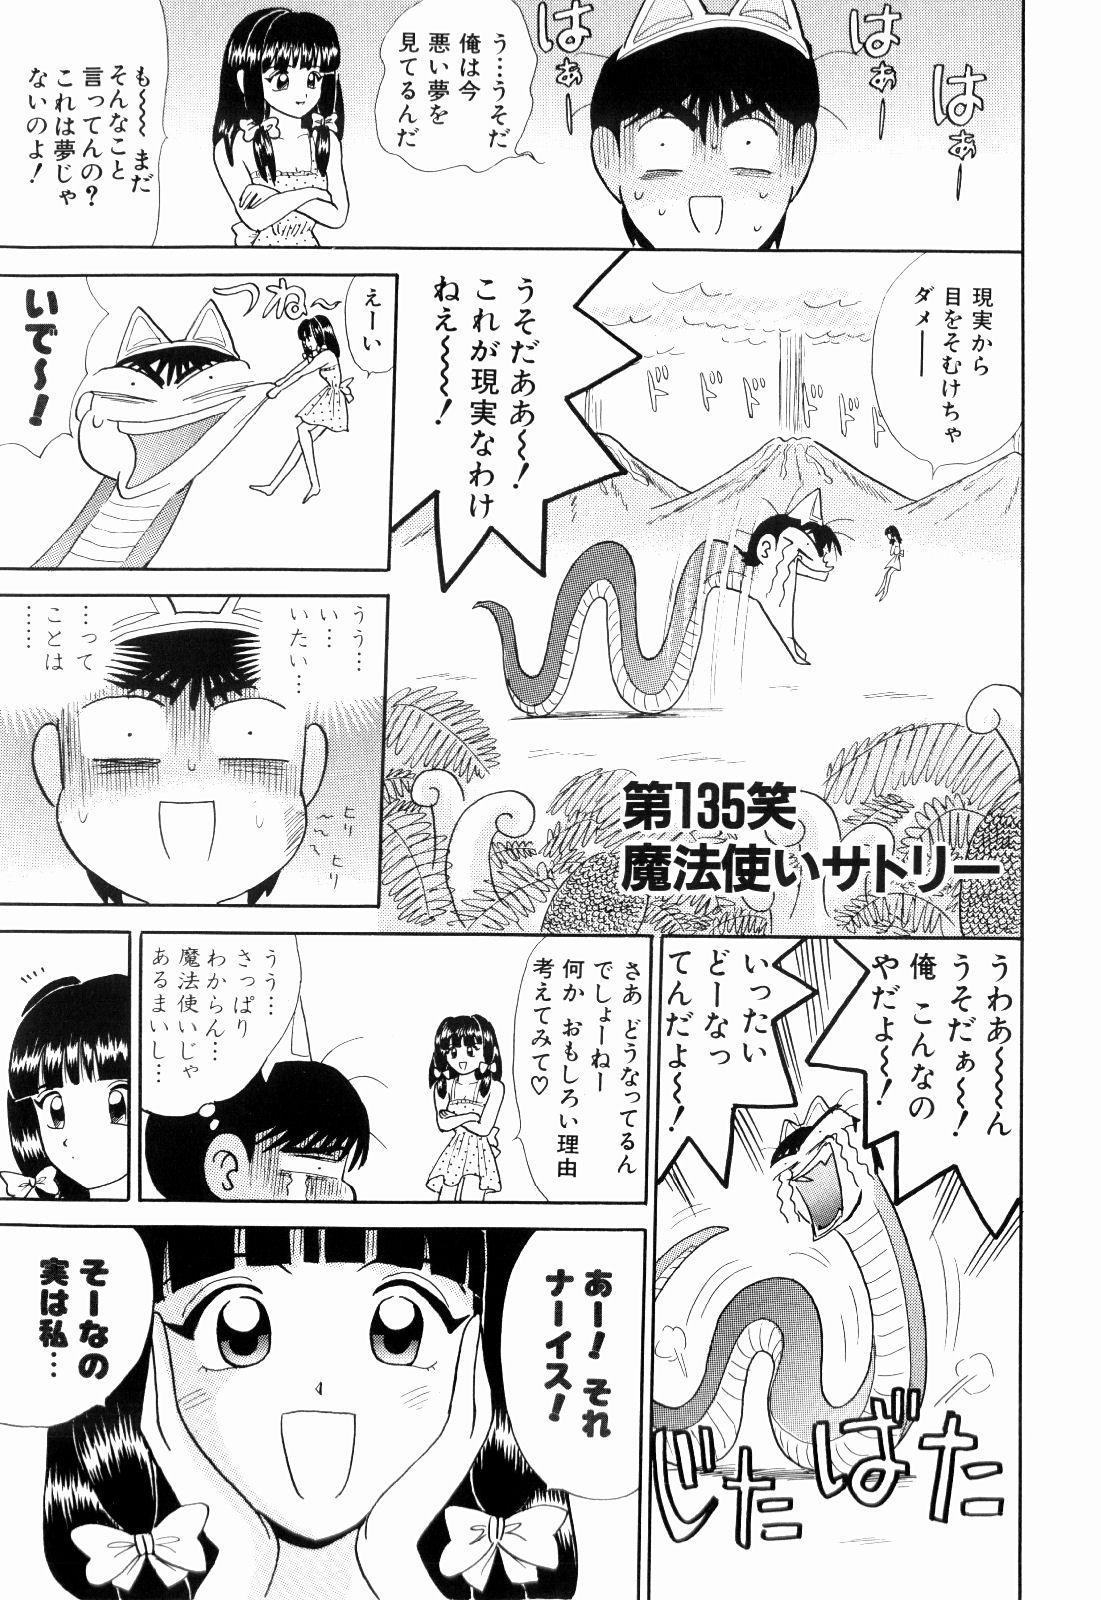 Star Kenjiro Kakimoto - Futari Kurashi 11 Bubble - Page 5